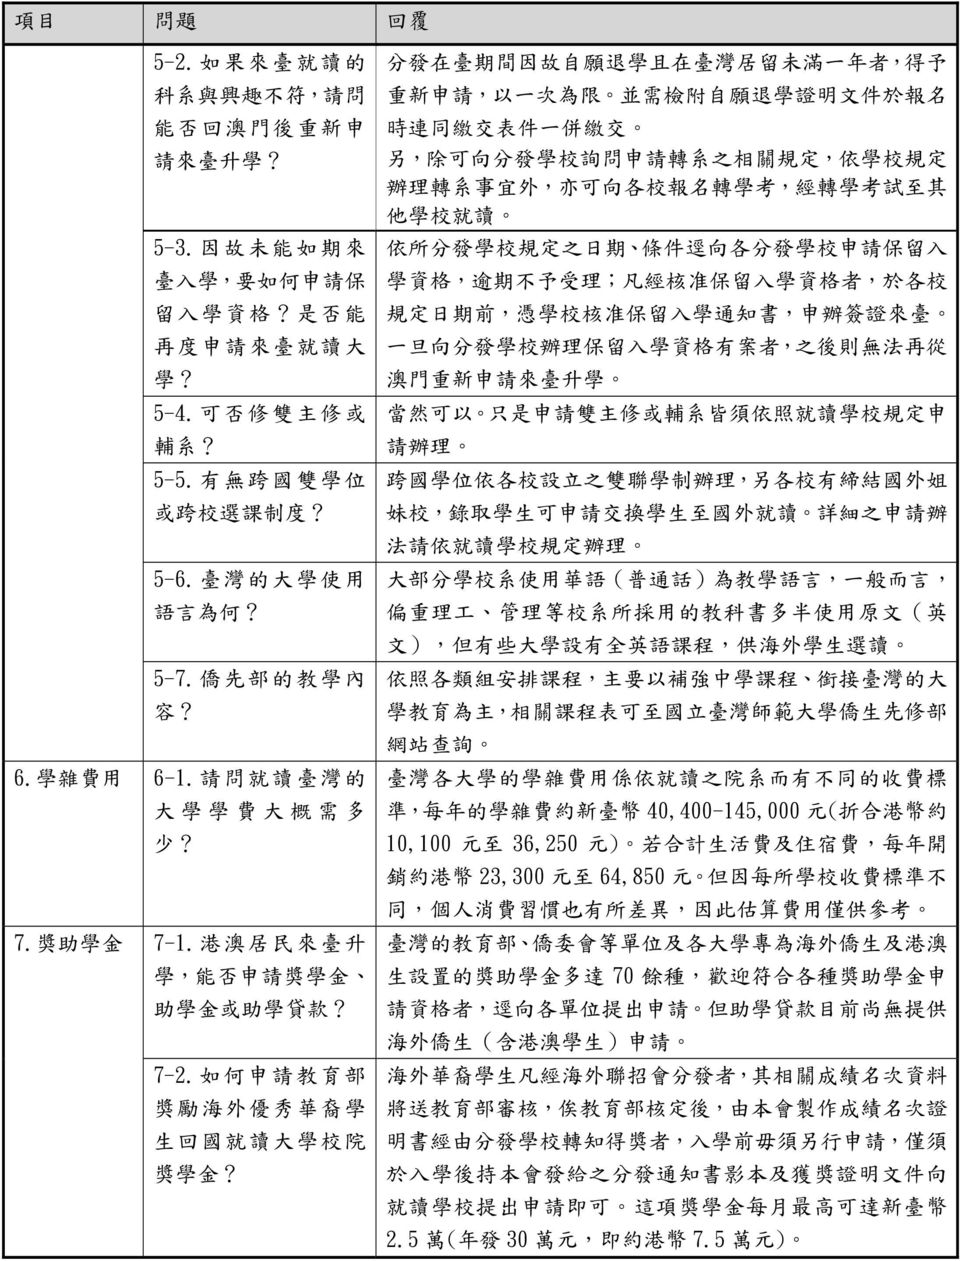 如 何 申 請 教 育 部 獎 勵 海 外 優 秀 華 裔 學 生 回 國 就 讀 大 學 校 院 獎 學 金?